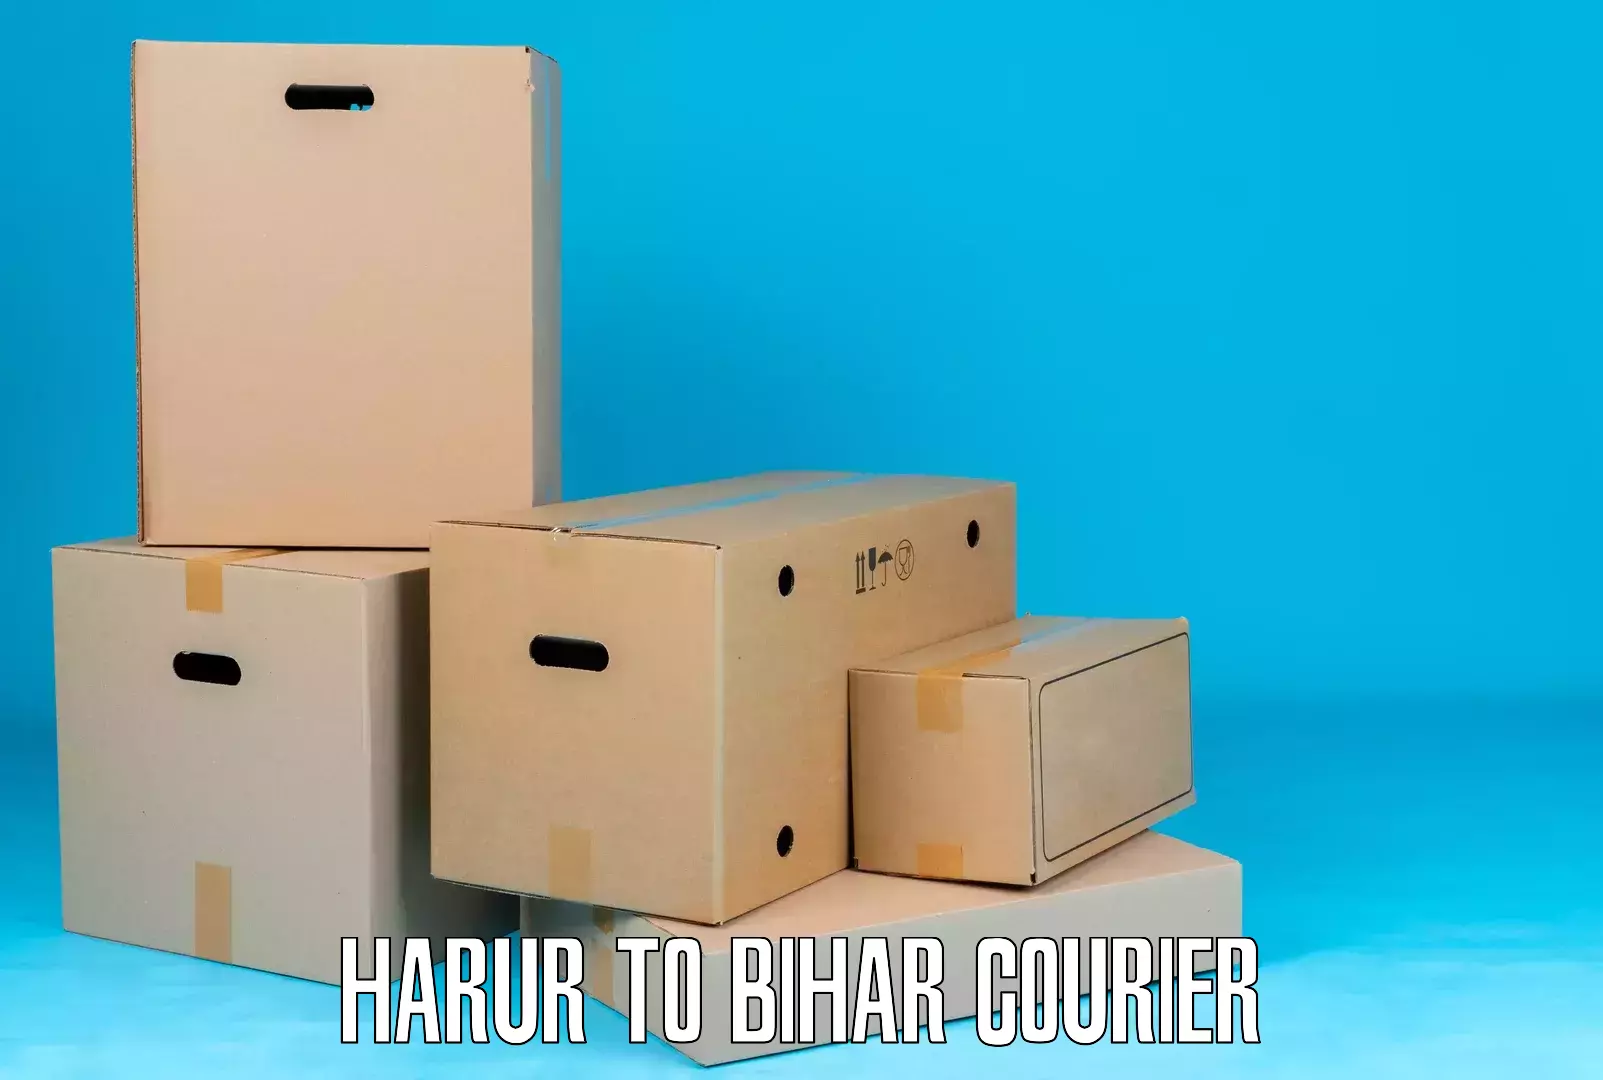 Courier service comparison Harur to Biraul